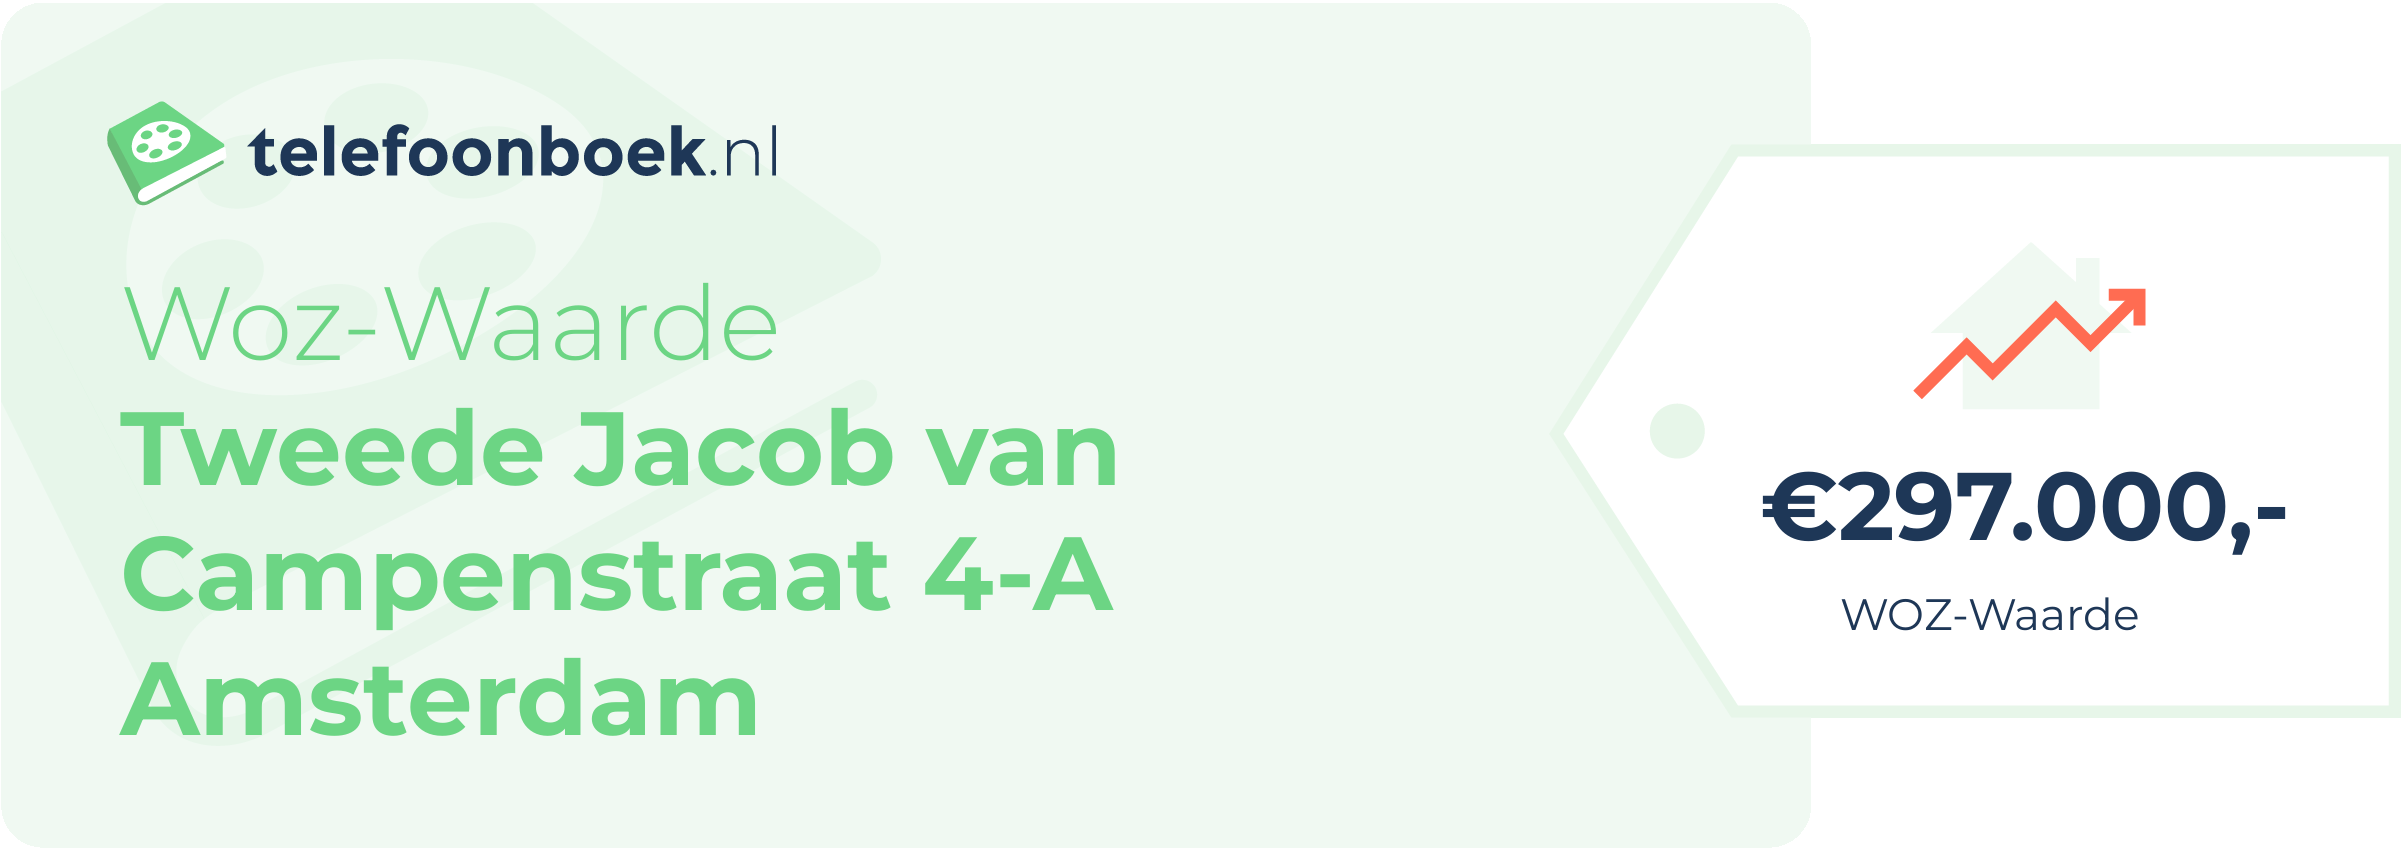 WOZ-waarde Tweede Jacob Van Campenstraat 4-A Amsterdam